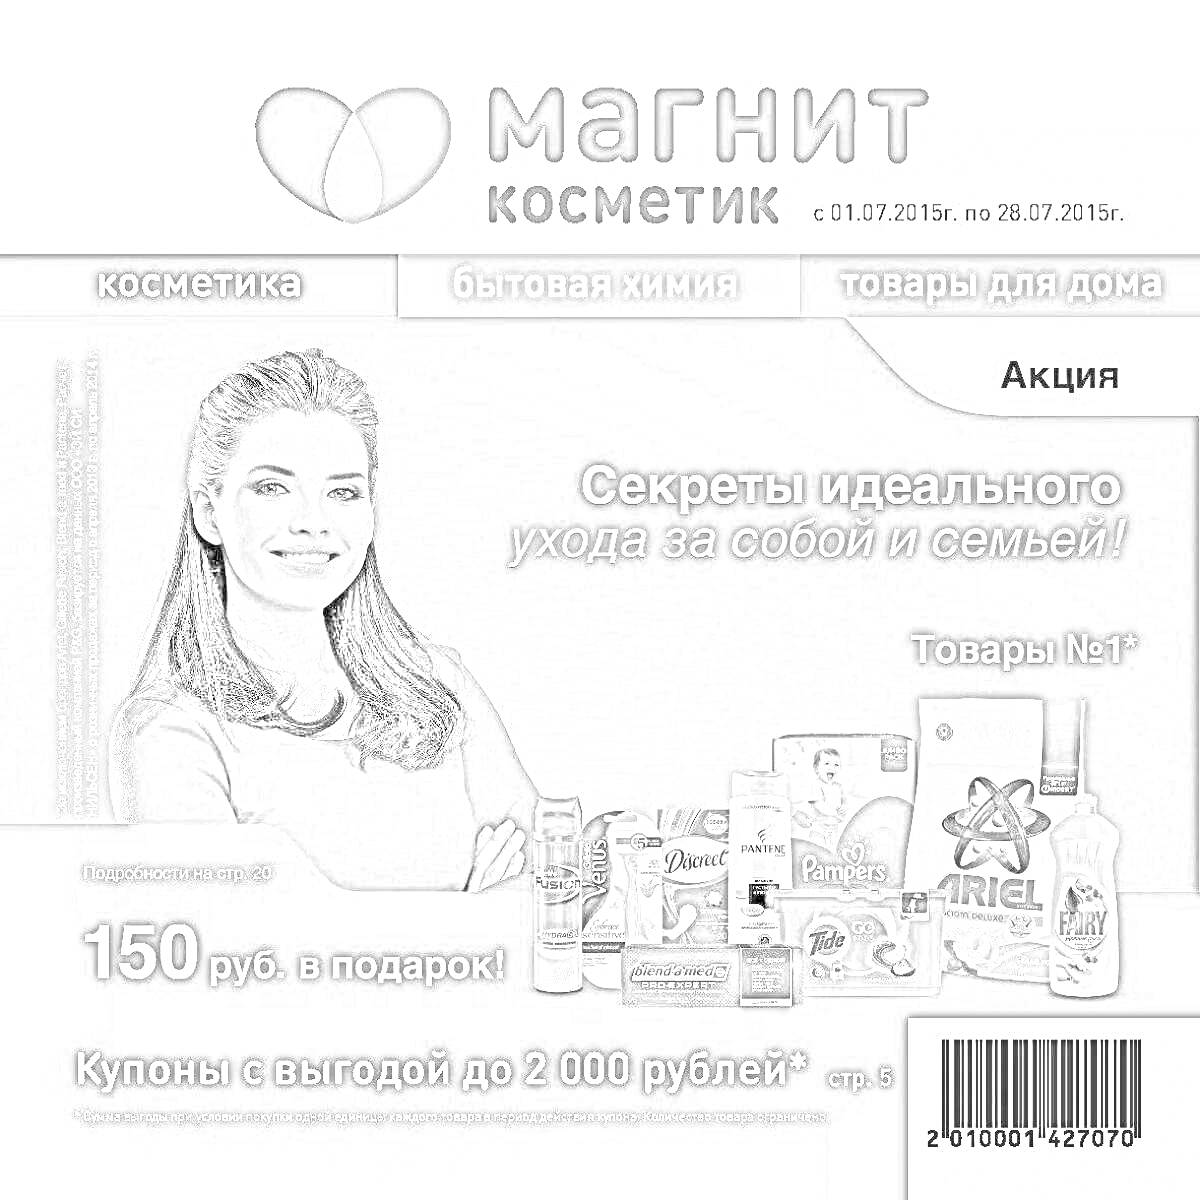 Раскраска Магнит Косметик - реклама акций с товарами №1, купоны и подарок